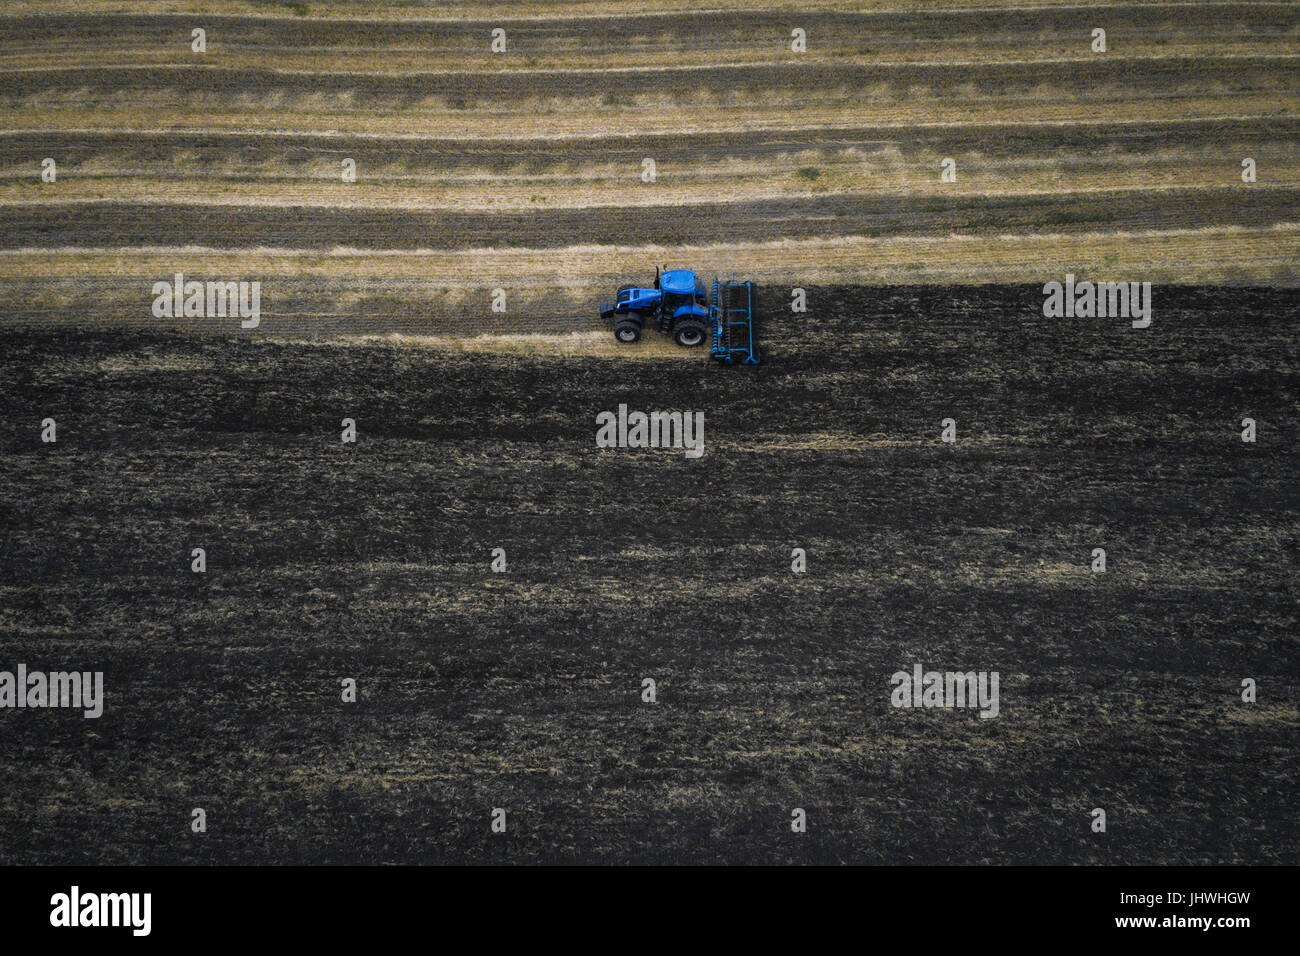 Le tracteur laboure le champ blanc sur fond de la terre noire, et derrière elle des oiseaux volent et la collecte de nourriture. Aeril vue. Machines agricoles Banque D'Images